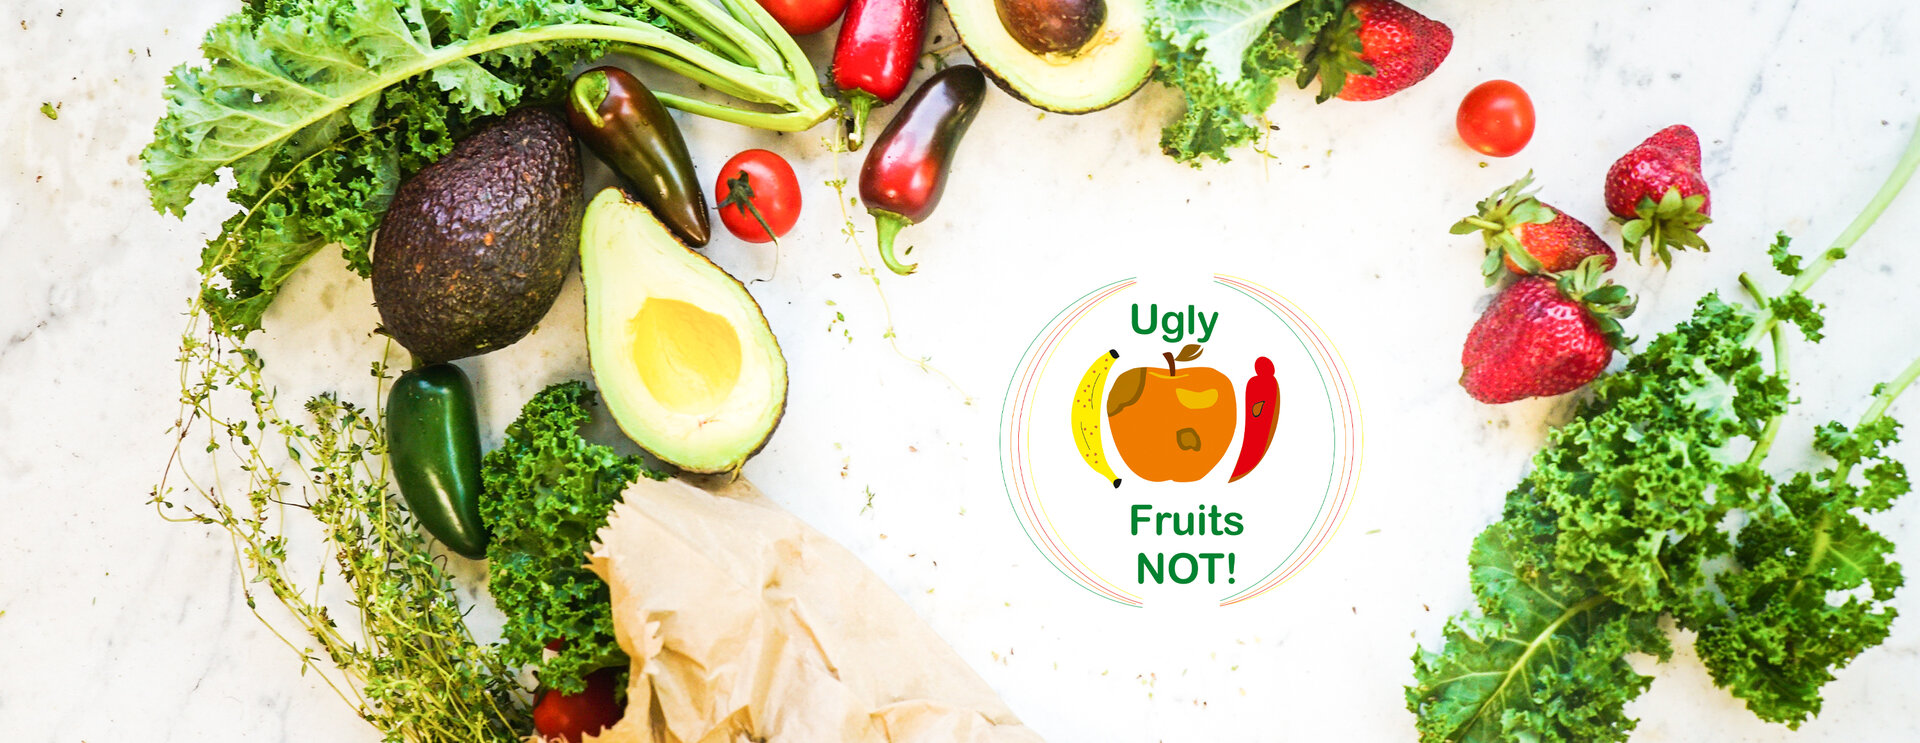 Foto de verduras y frutas. Cerca del centro de la foto, el logotipo del proyecto, que muestra frutas y verduras subperfectas, y las palabras 